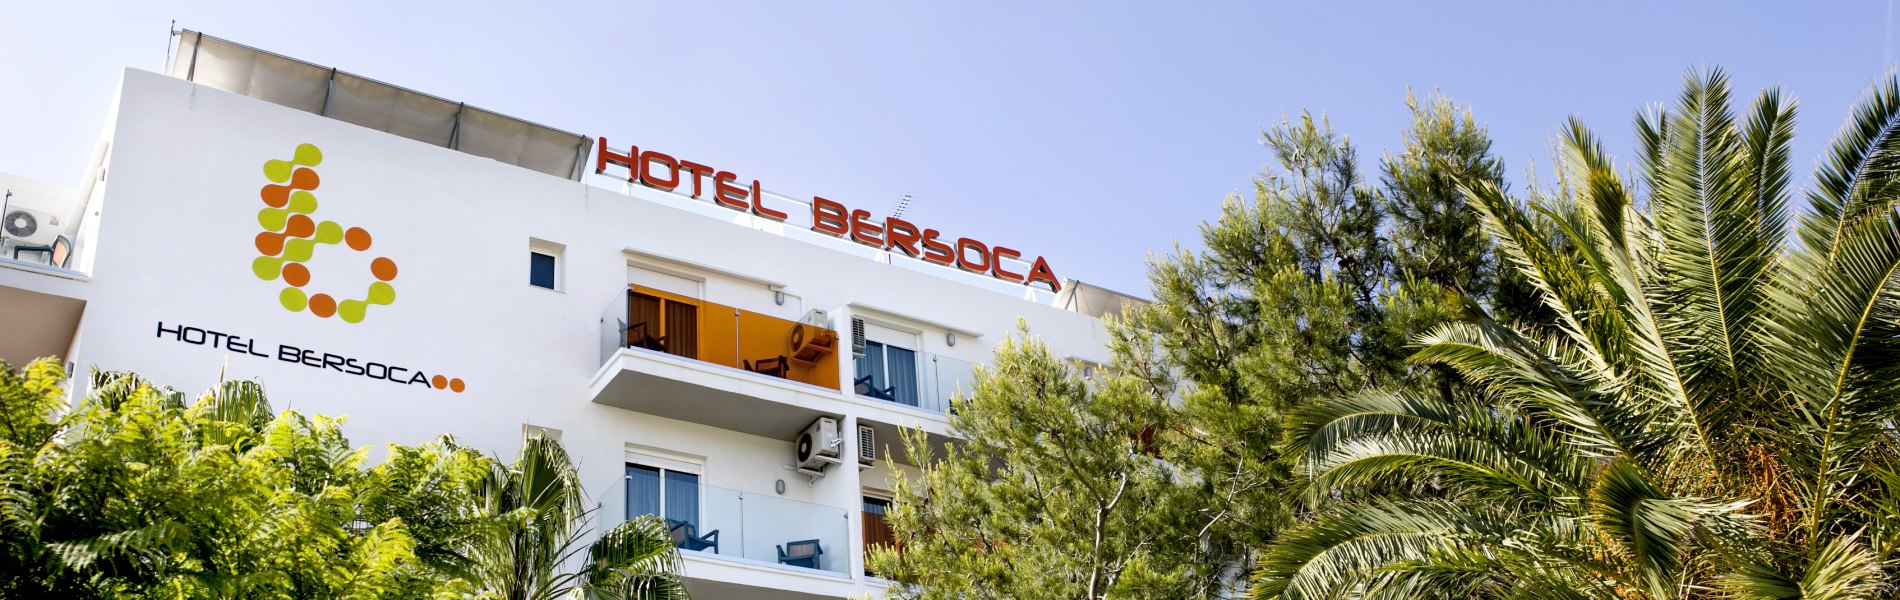 Hotel Bersoca 